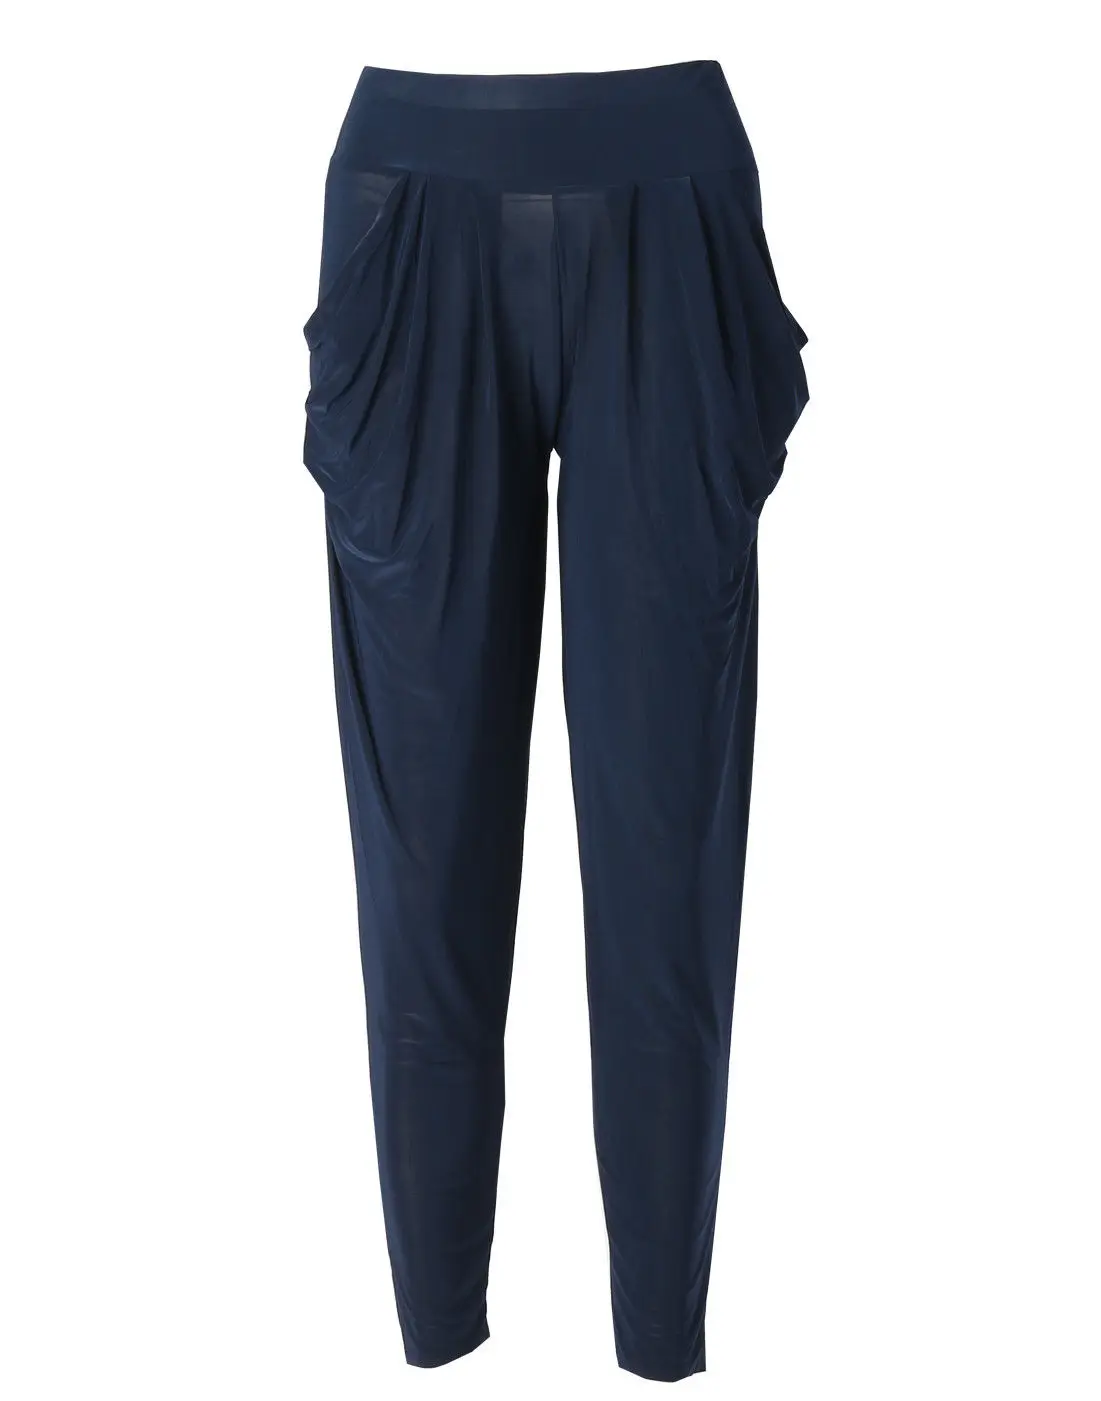 HIRIGIN женские модные повседневные шаровары танцевальные тренировочные штаны брюки женские брюки с высокой талией штаны свободные брюки Pantalon Femme - Цвет: Navy blue